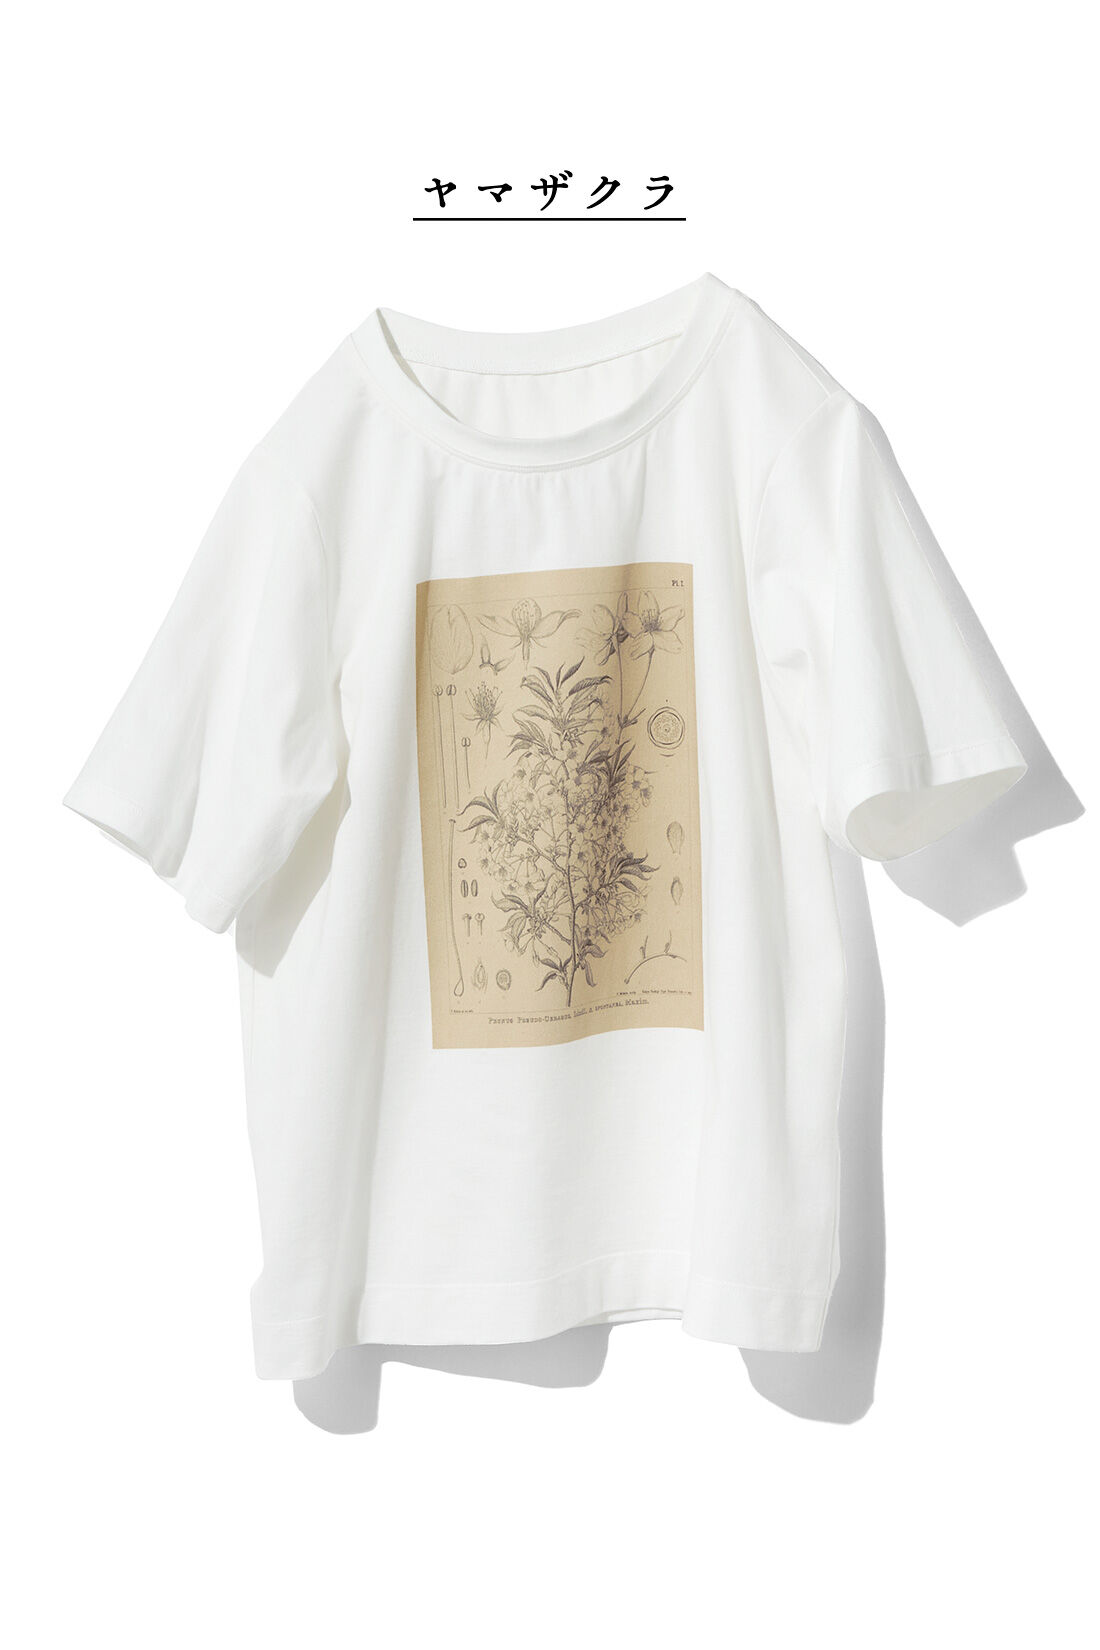 牧野植物園×IEDIT[イディット]コラボ　植物図Tシャツ〈ヤマザクラ〉